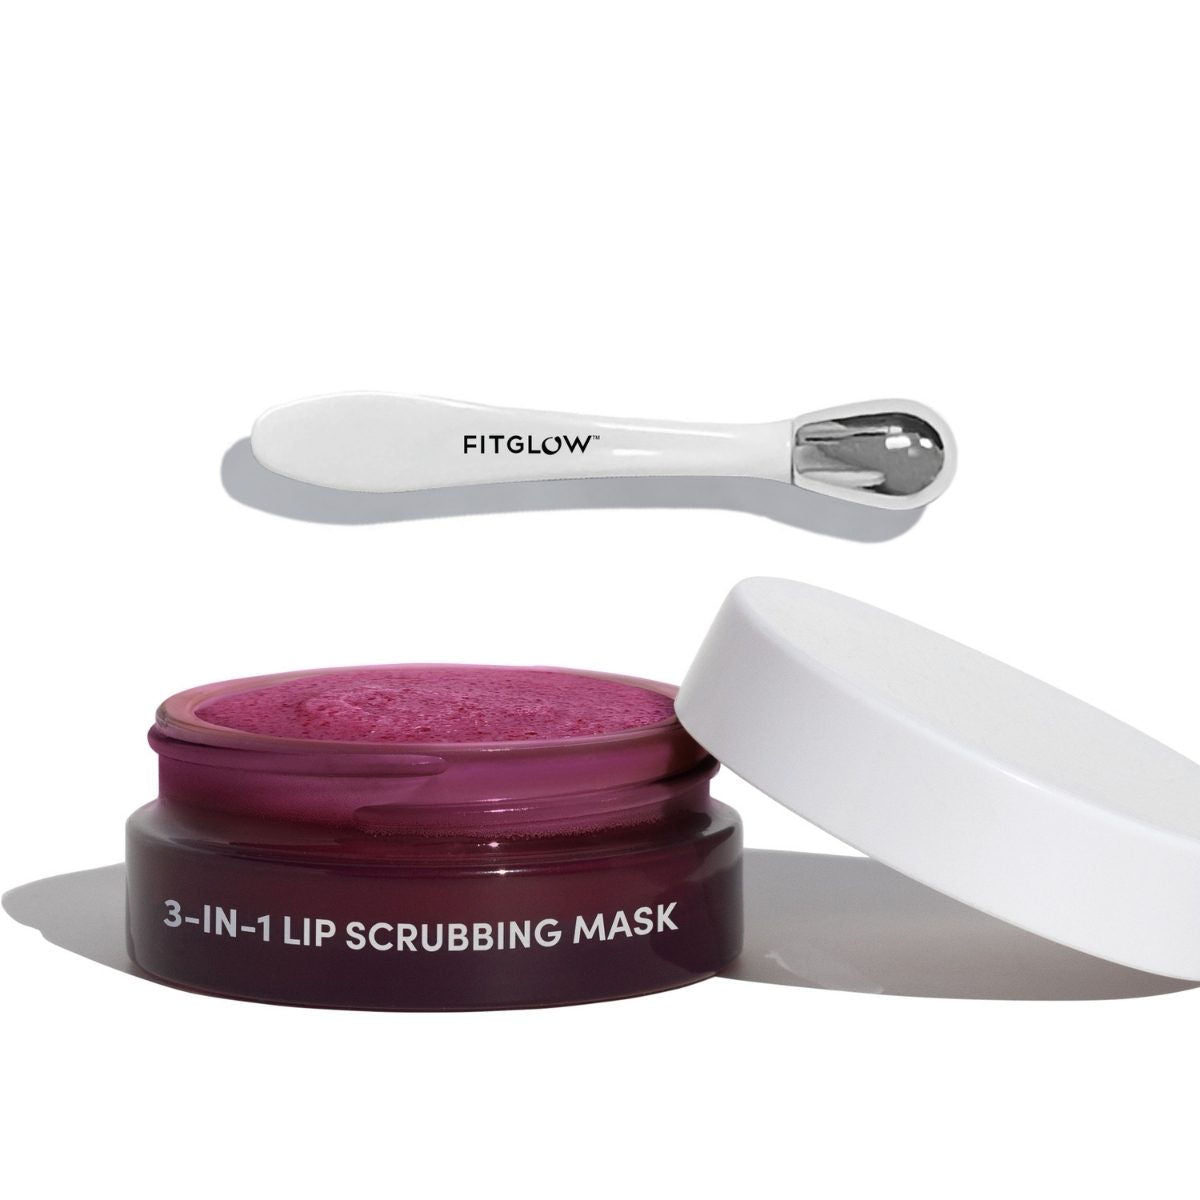 Fitglow Beauty 3-in-1 Lip Scrubbing Mask